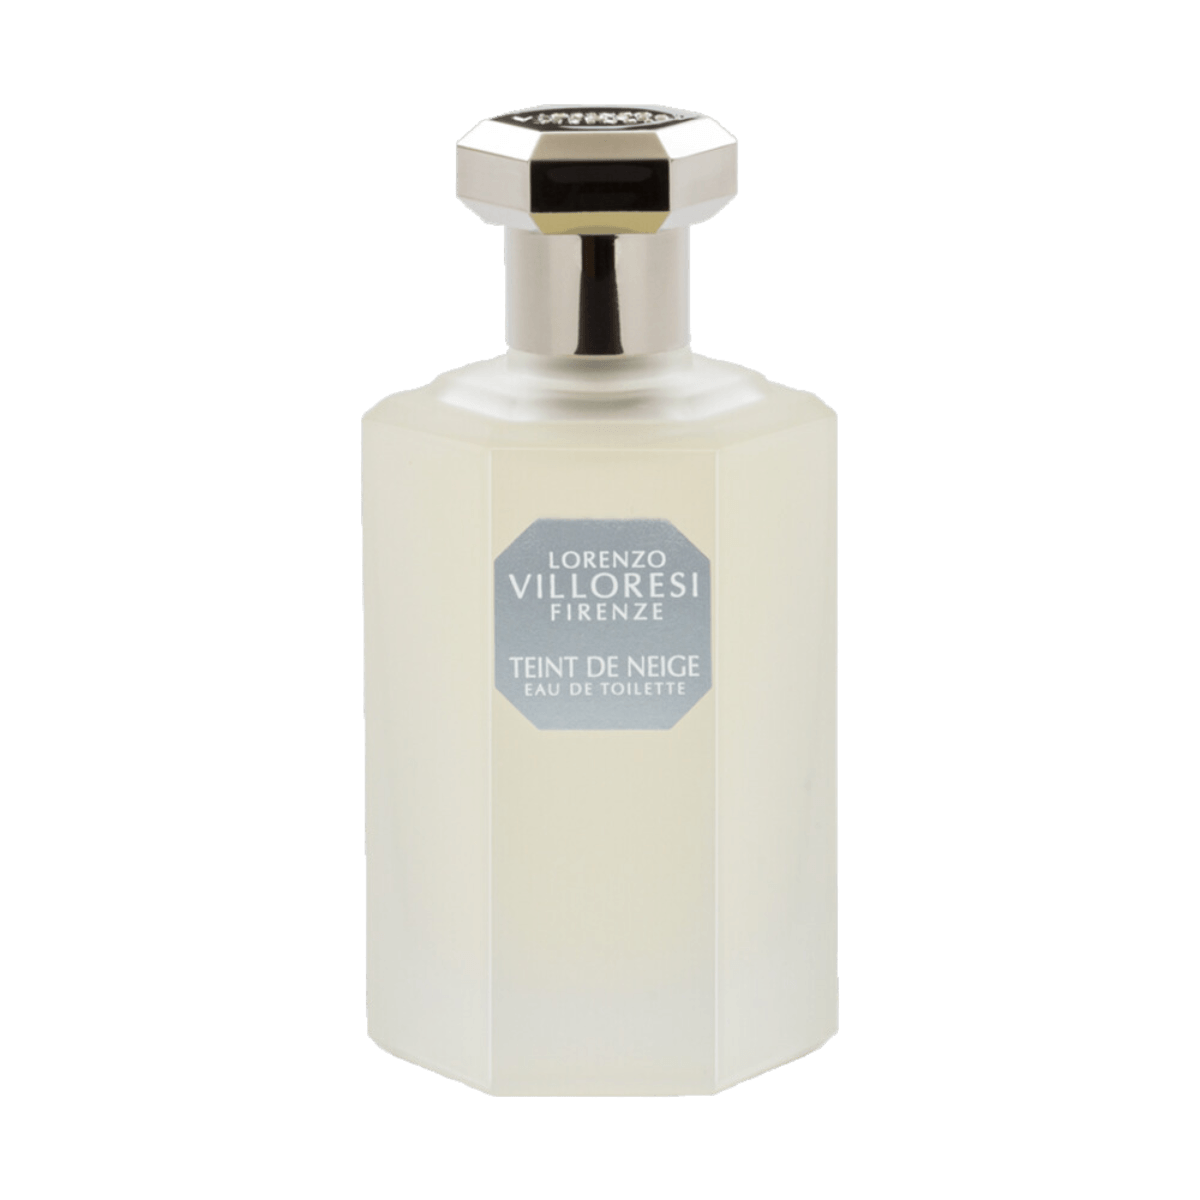 Afbeelding van parfumfles Teint de Neige eau de toilette 100 ml van het merk Lorenzo Villoresi